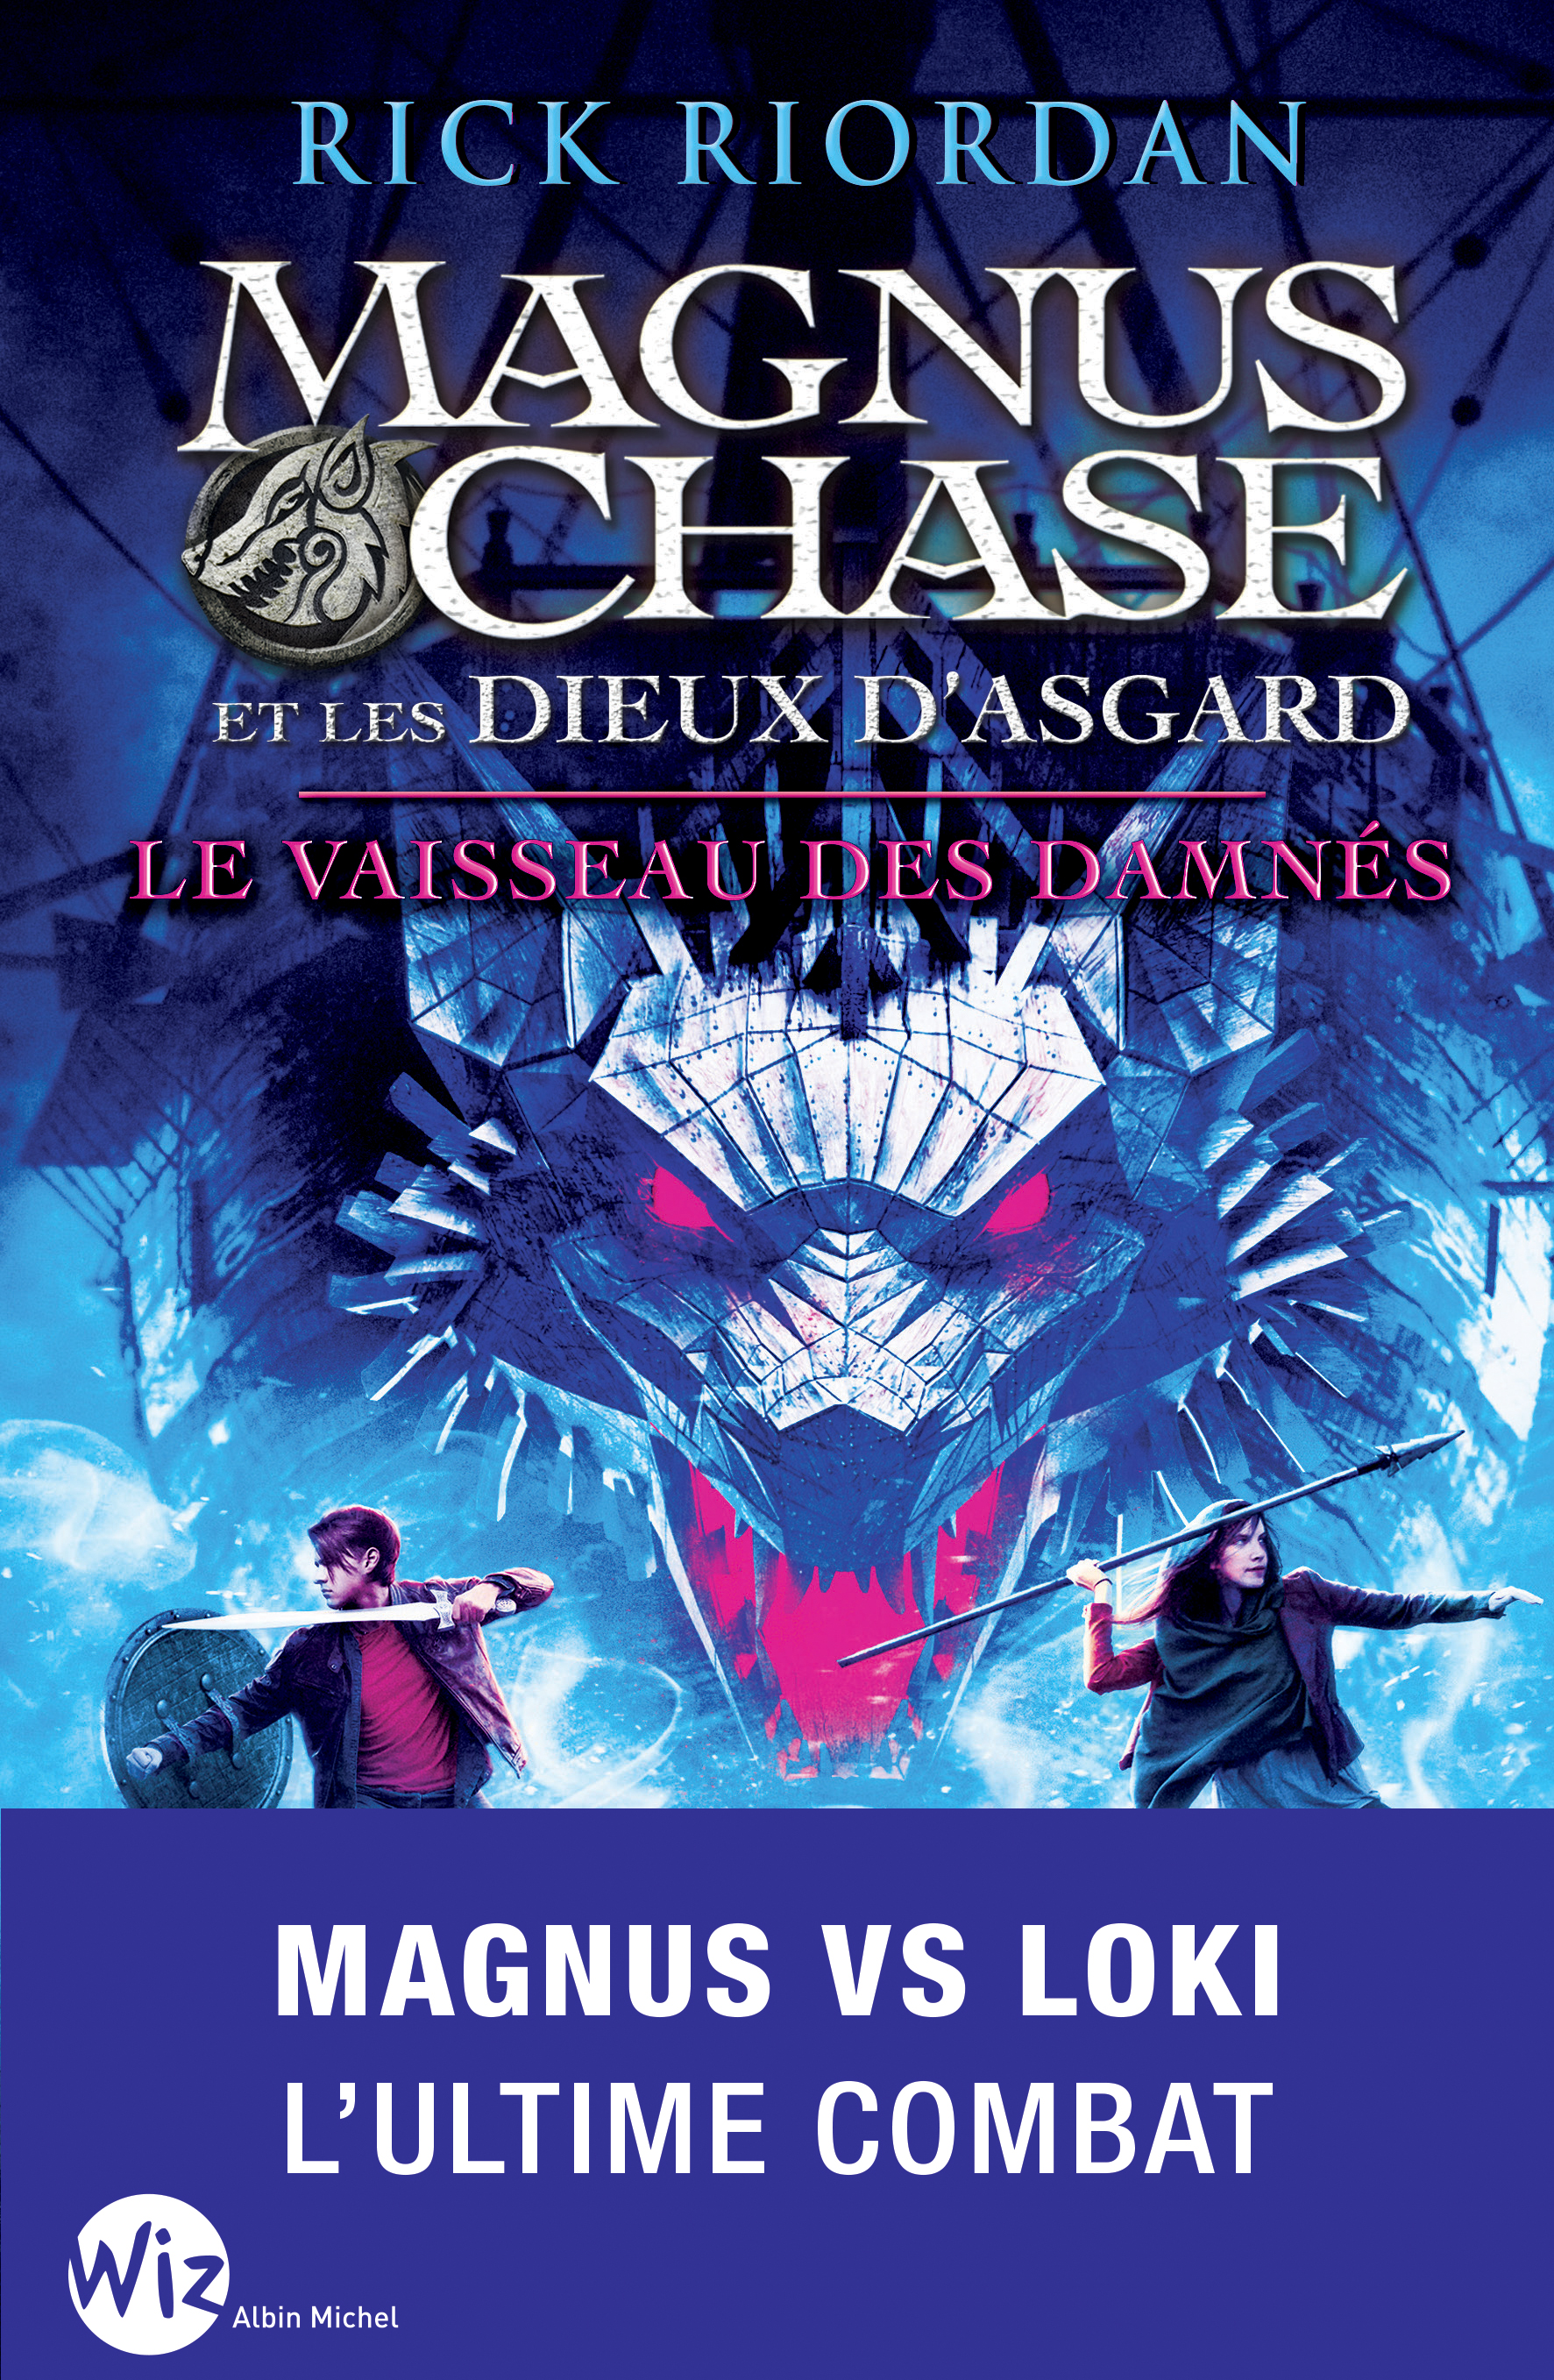 Couverture du livre Magnus Chase et les dieux d'Asgard - tome 3